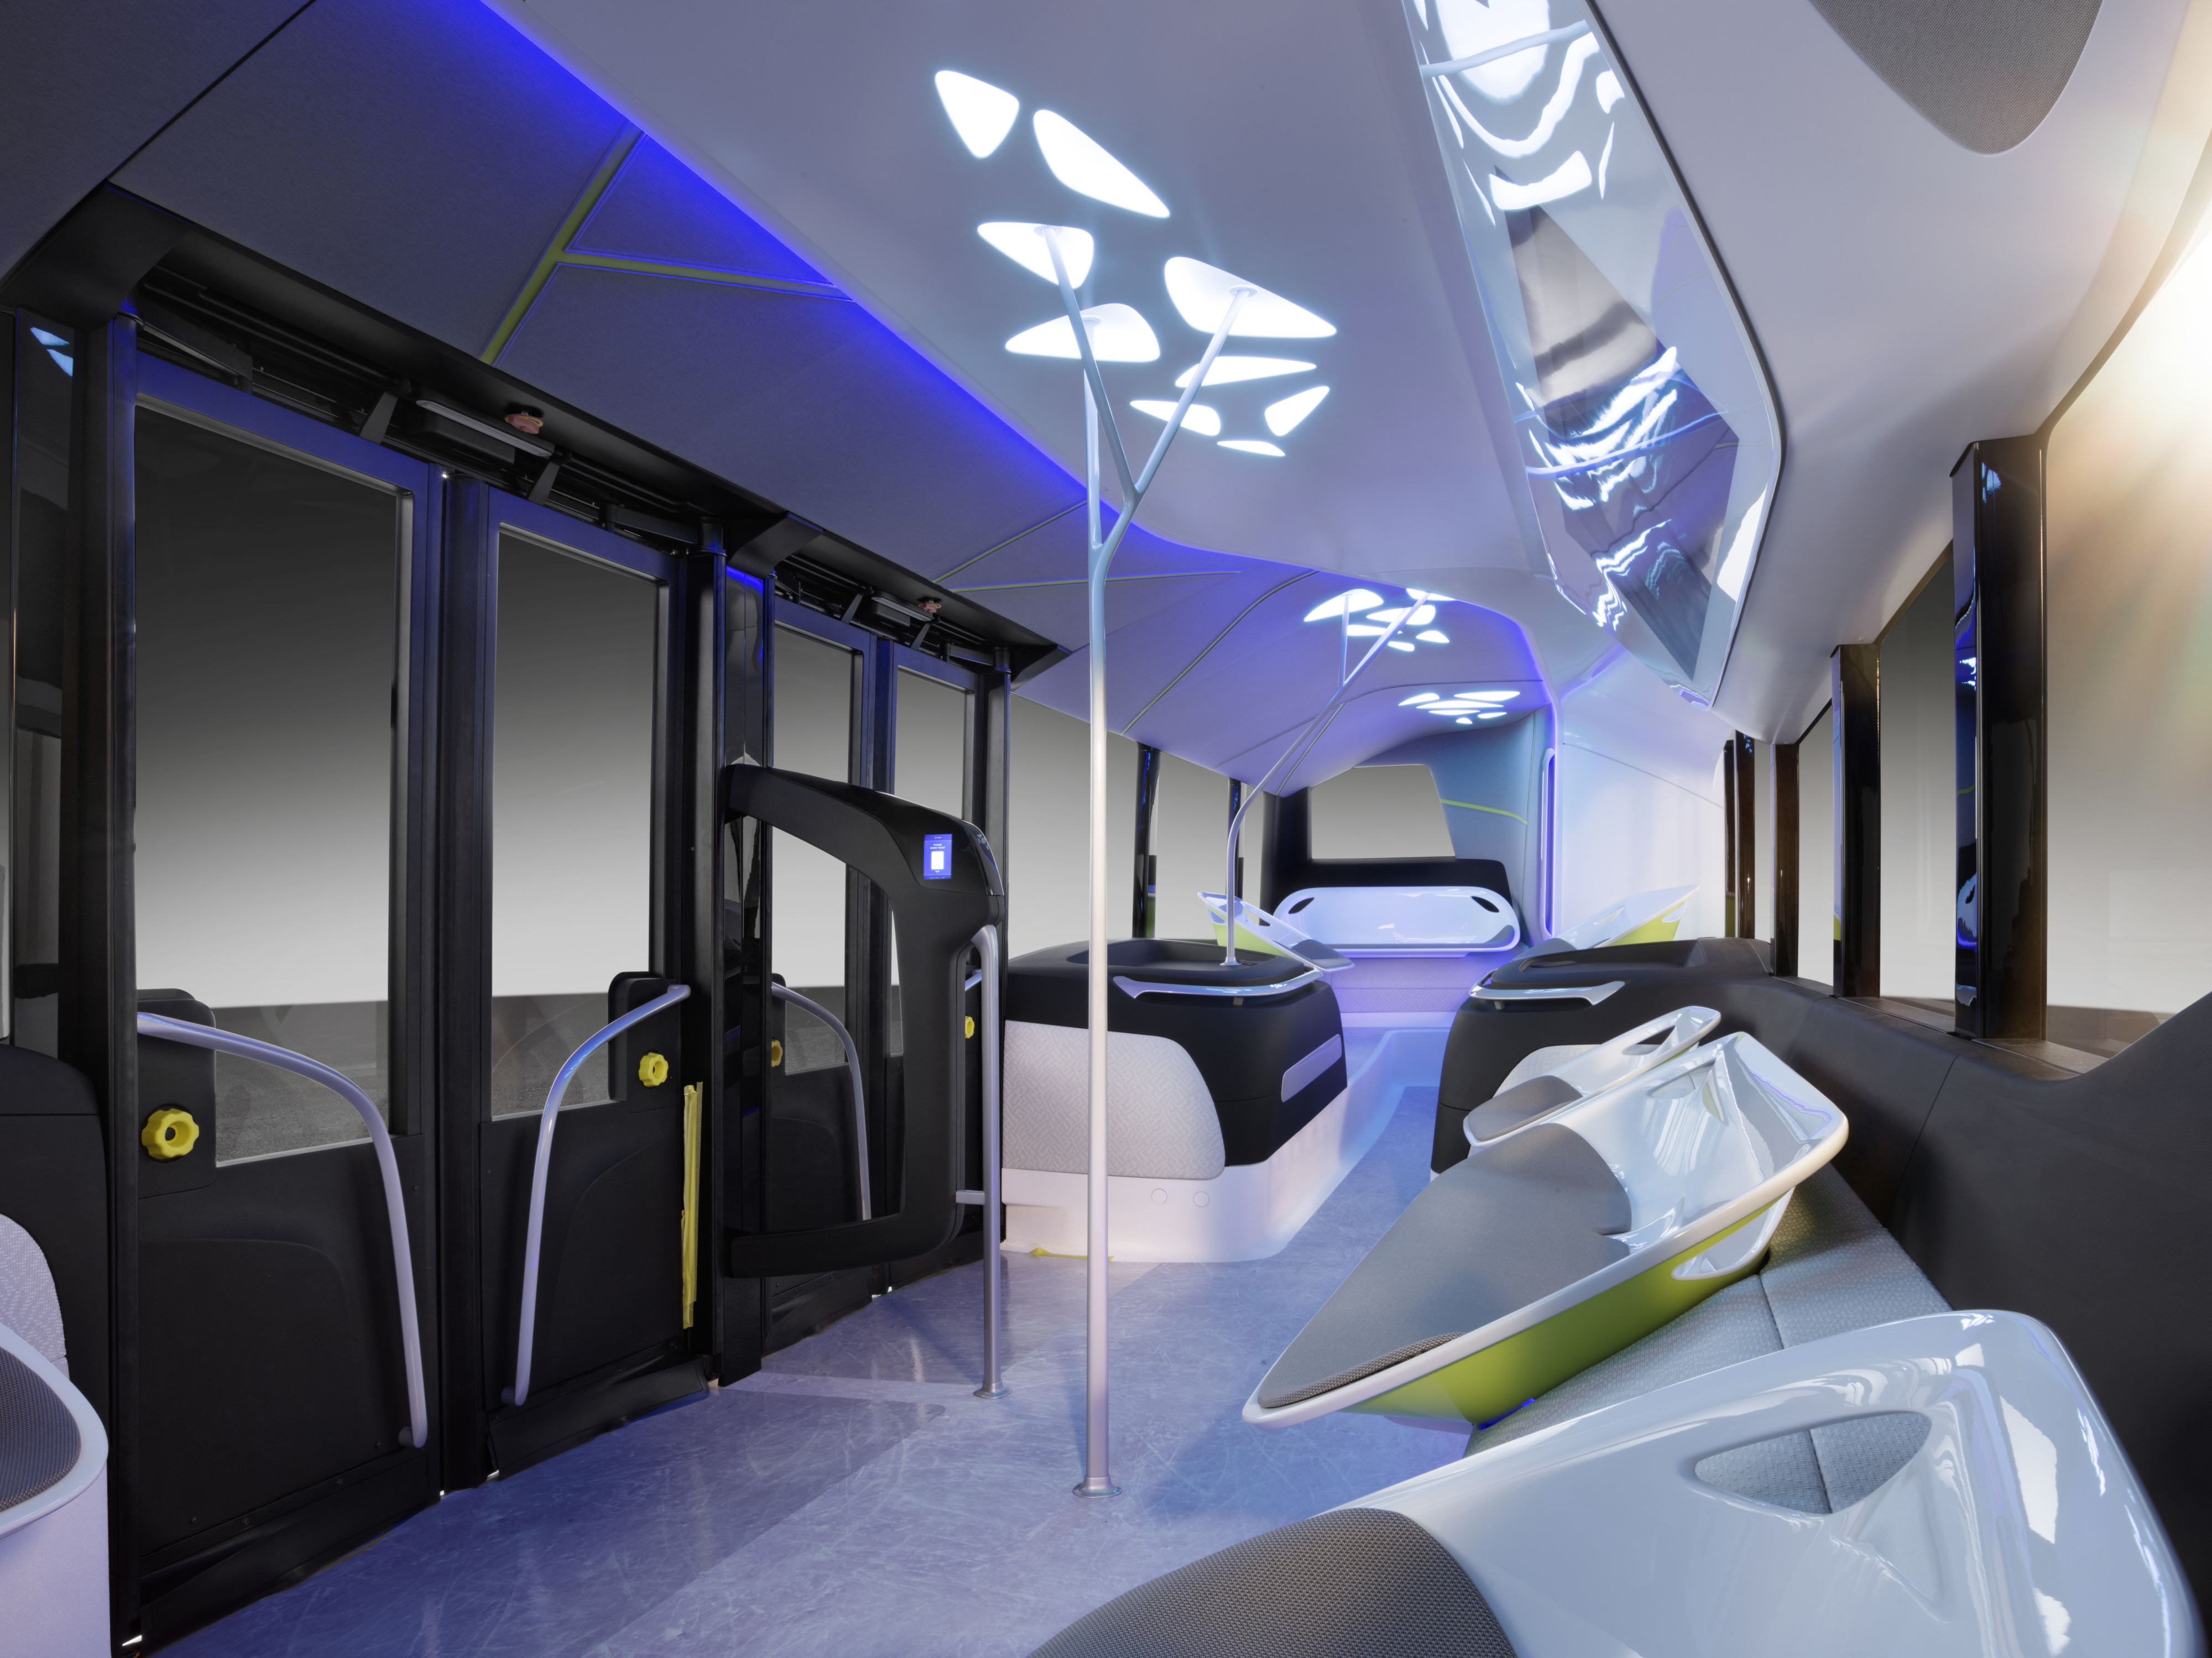 Салон общественного транспорта. Mercedes-Benz Фьючер Bus. Mercedes-Benz Future Bus салон. Автобус Мерседес концепт. Mercedes Future Bus концепт.